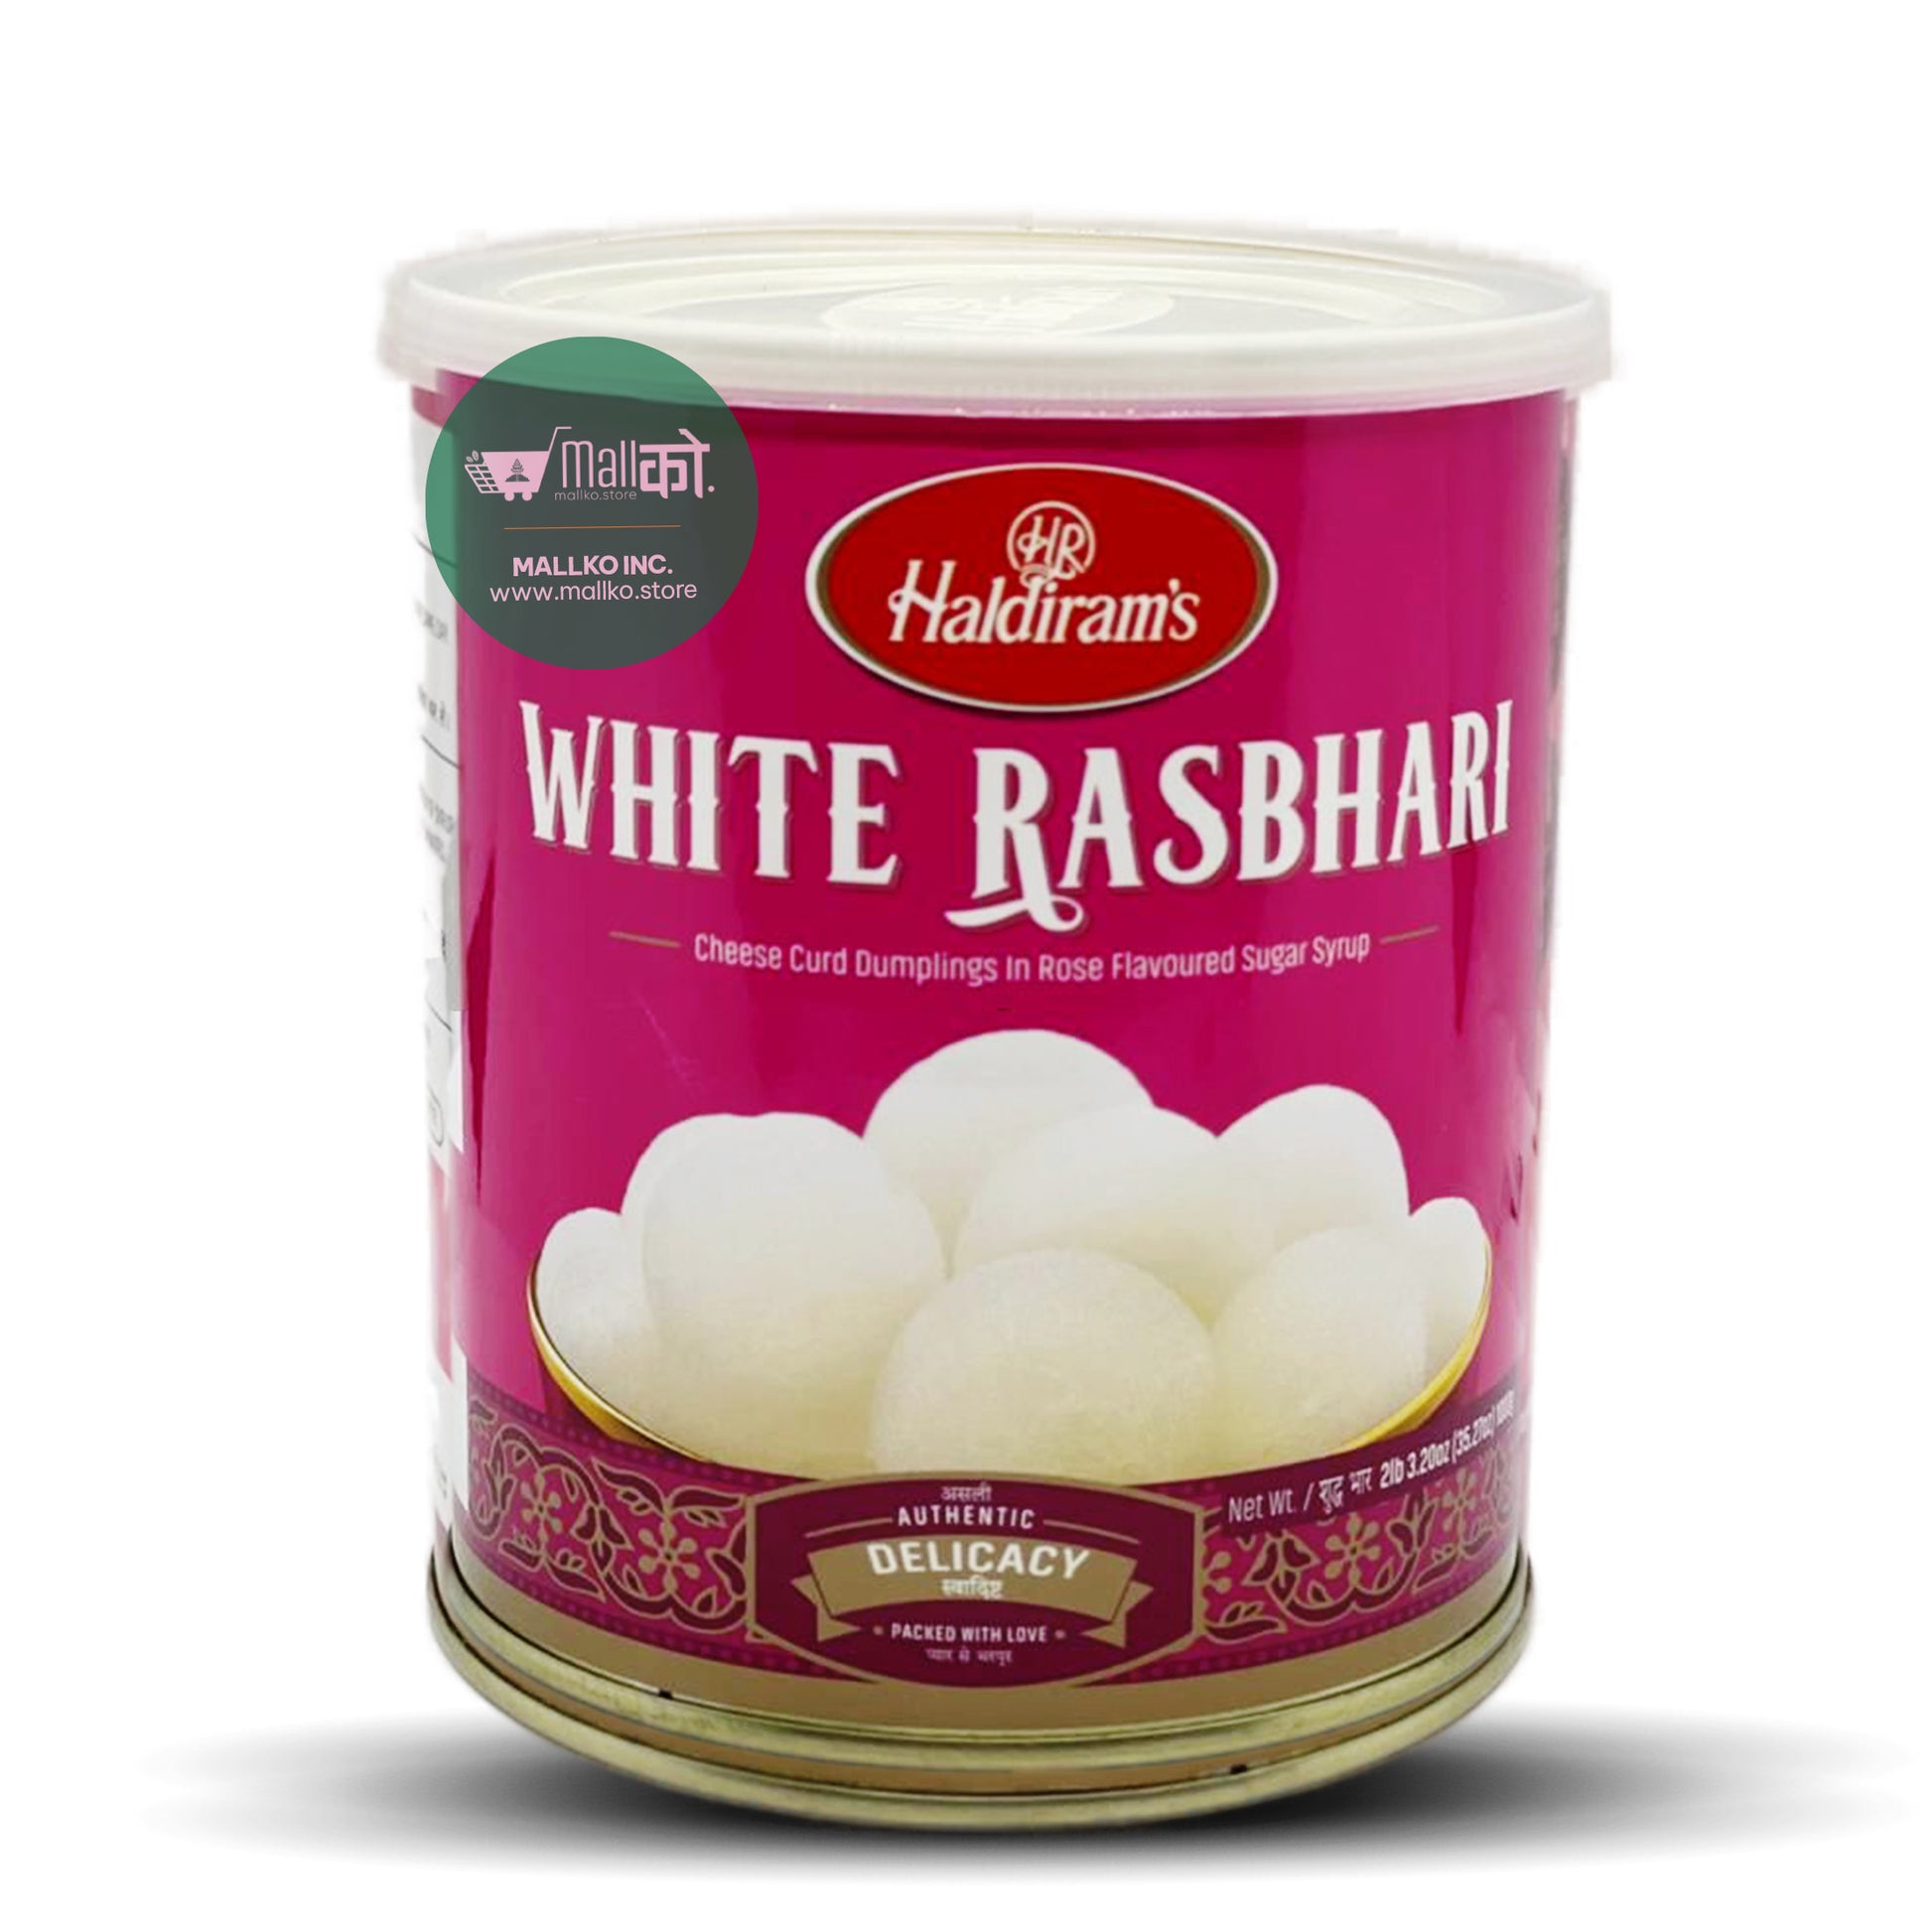 White Rasbari